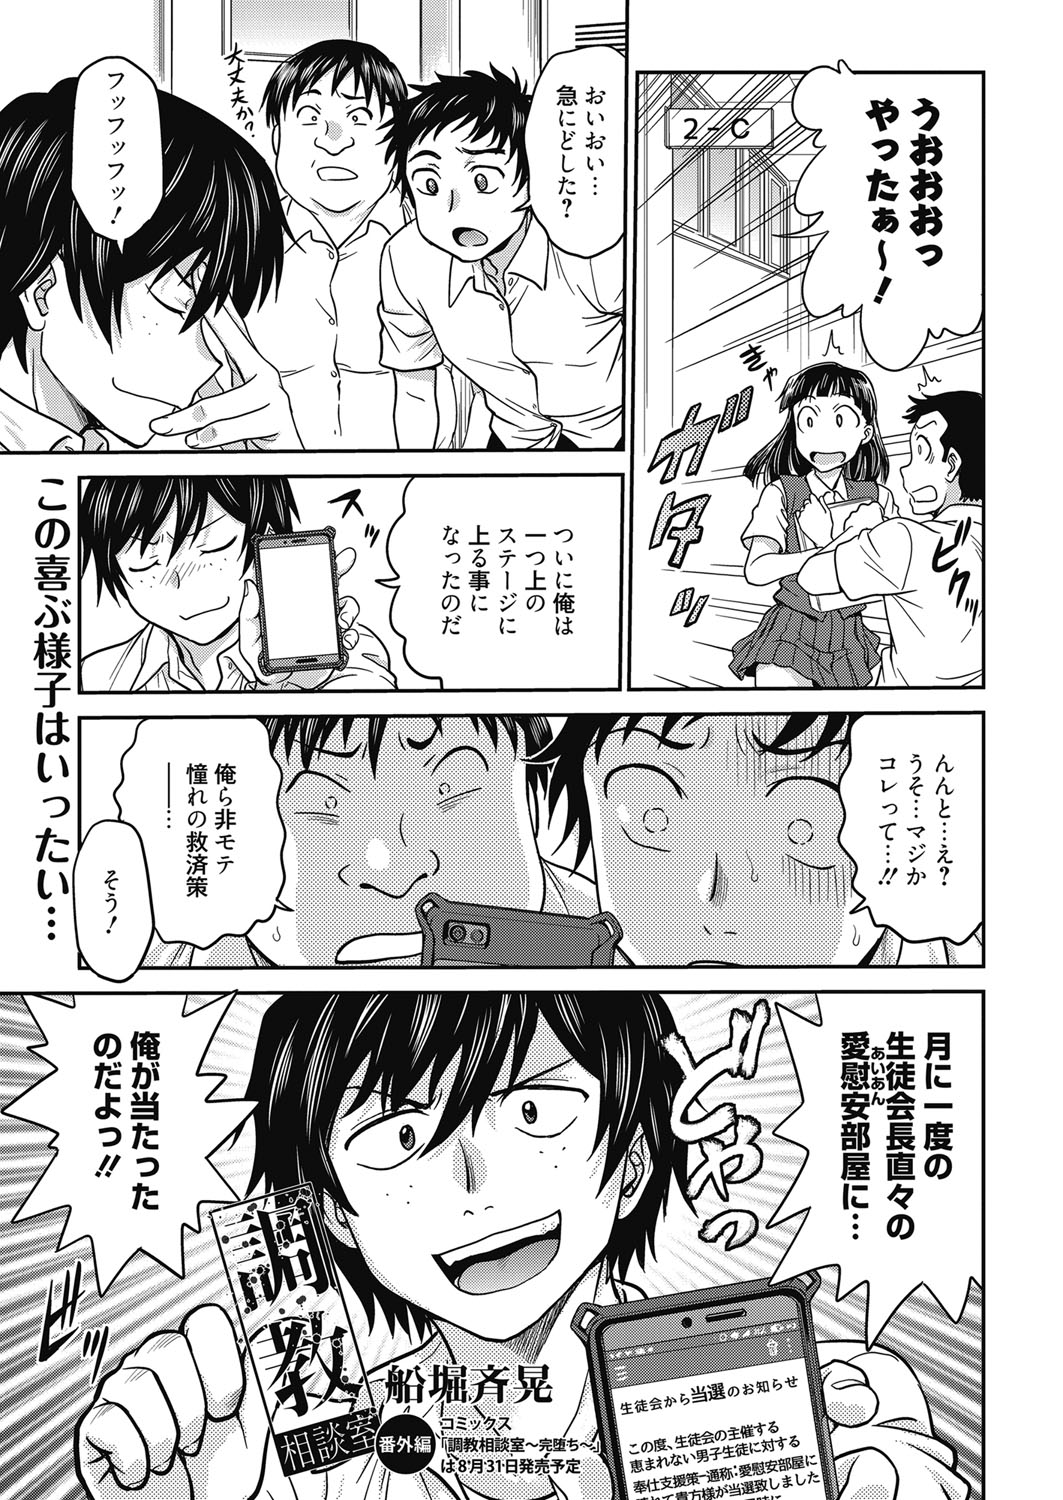 Web Manga Bangaichi Vol. 24 page 4 full